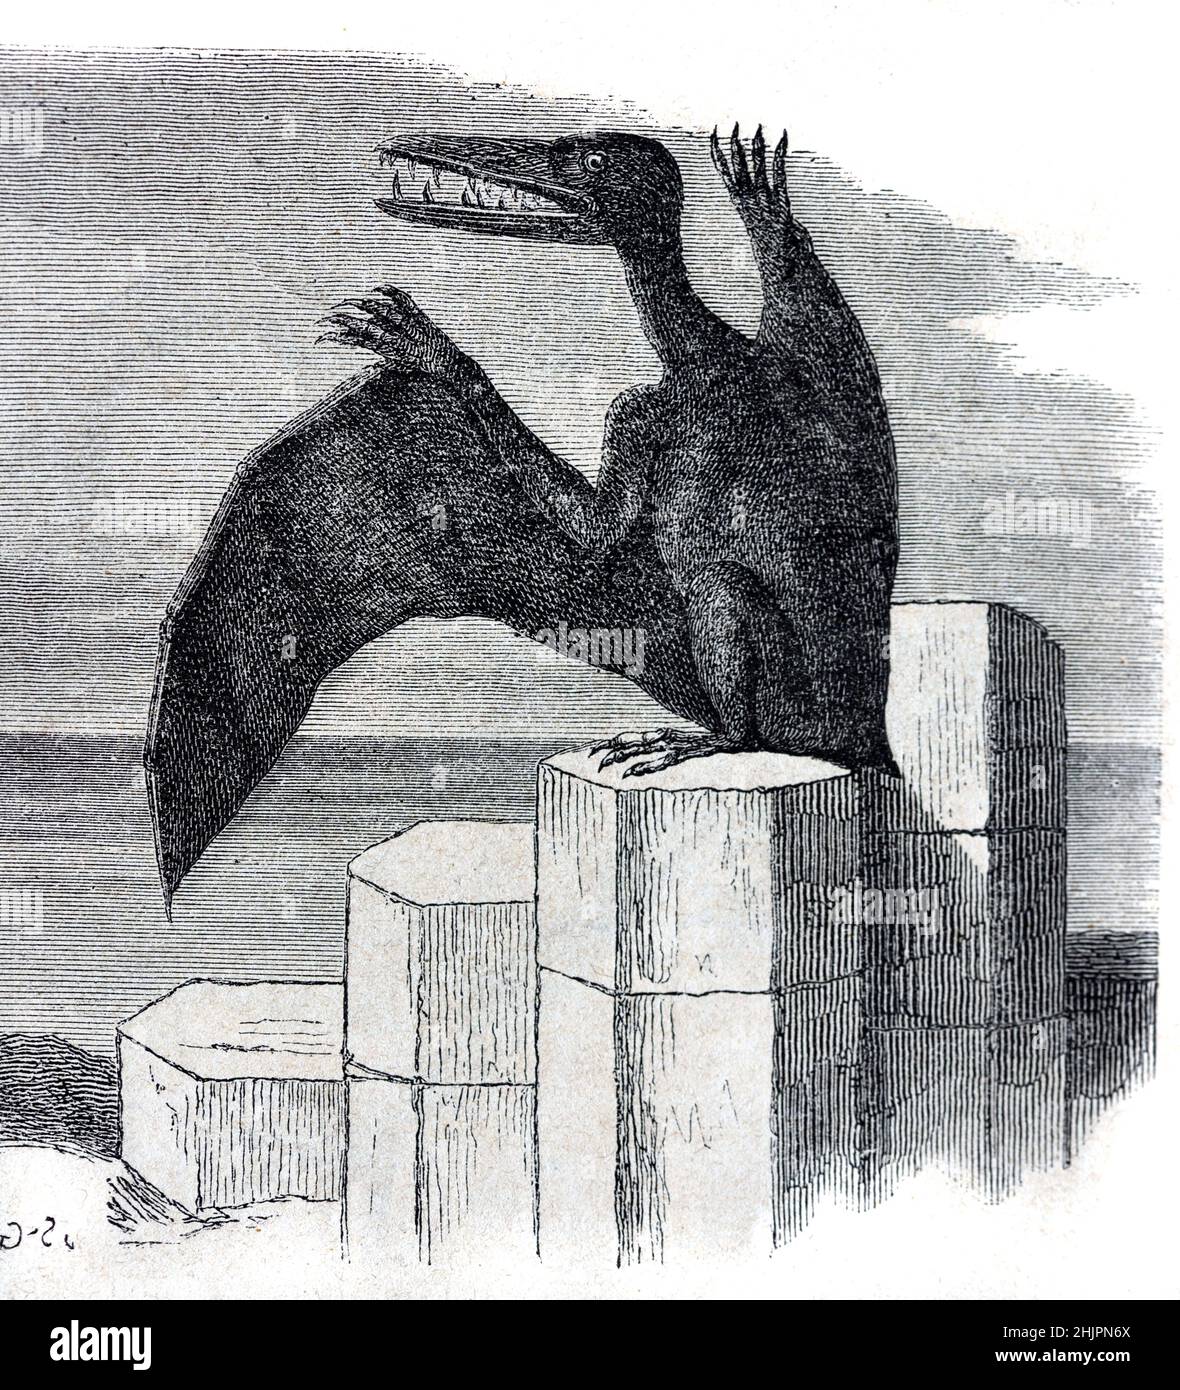 L'impressione dell'artista precoce di un anticheo Pterodactylus o Pterodactylus, di un rettile Pterosauro estinto o di un dinosauro Pterosauria. Illustrazione o incisione vintage 1865 Foto Stock